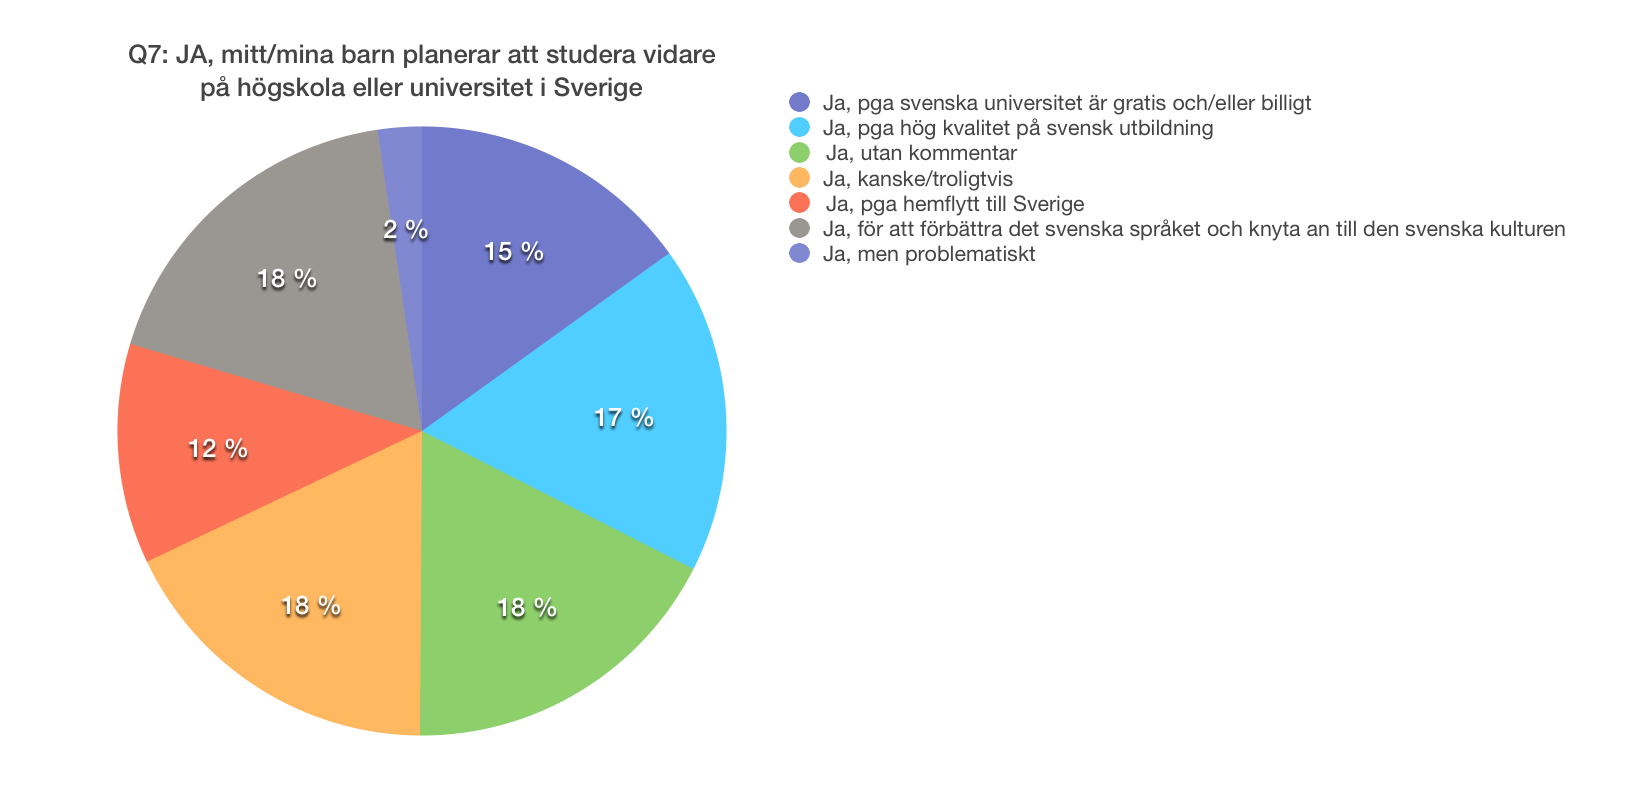 Fråga 7: Planerar ditt/dina barn att studera vidare på högskola eller universitet i Sverige?